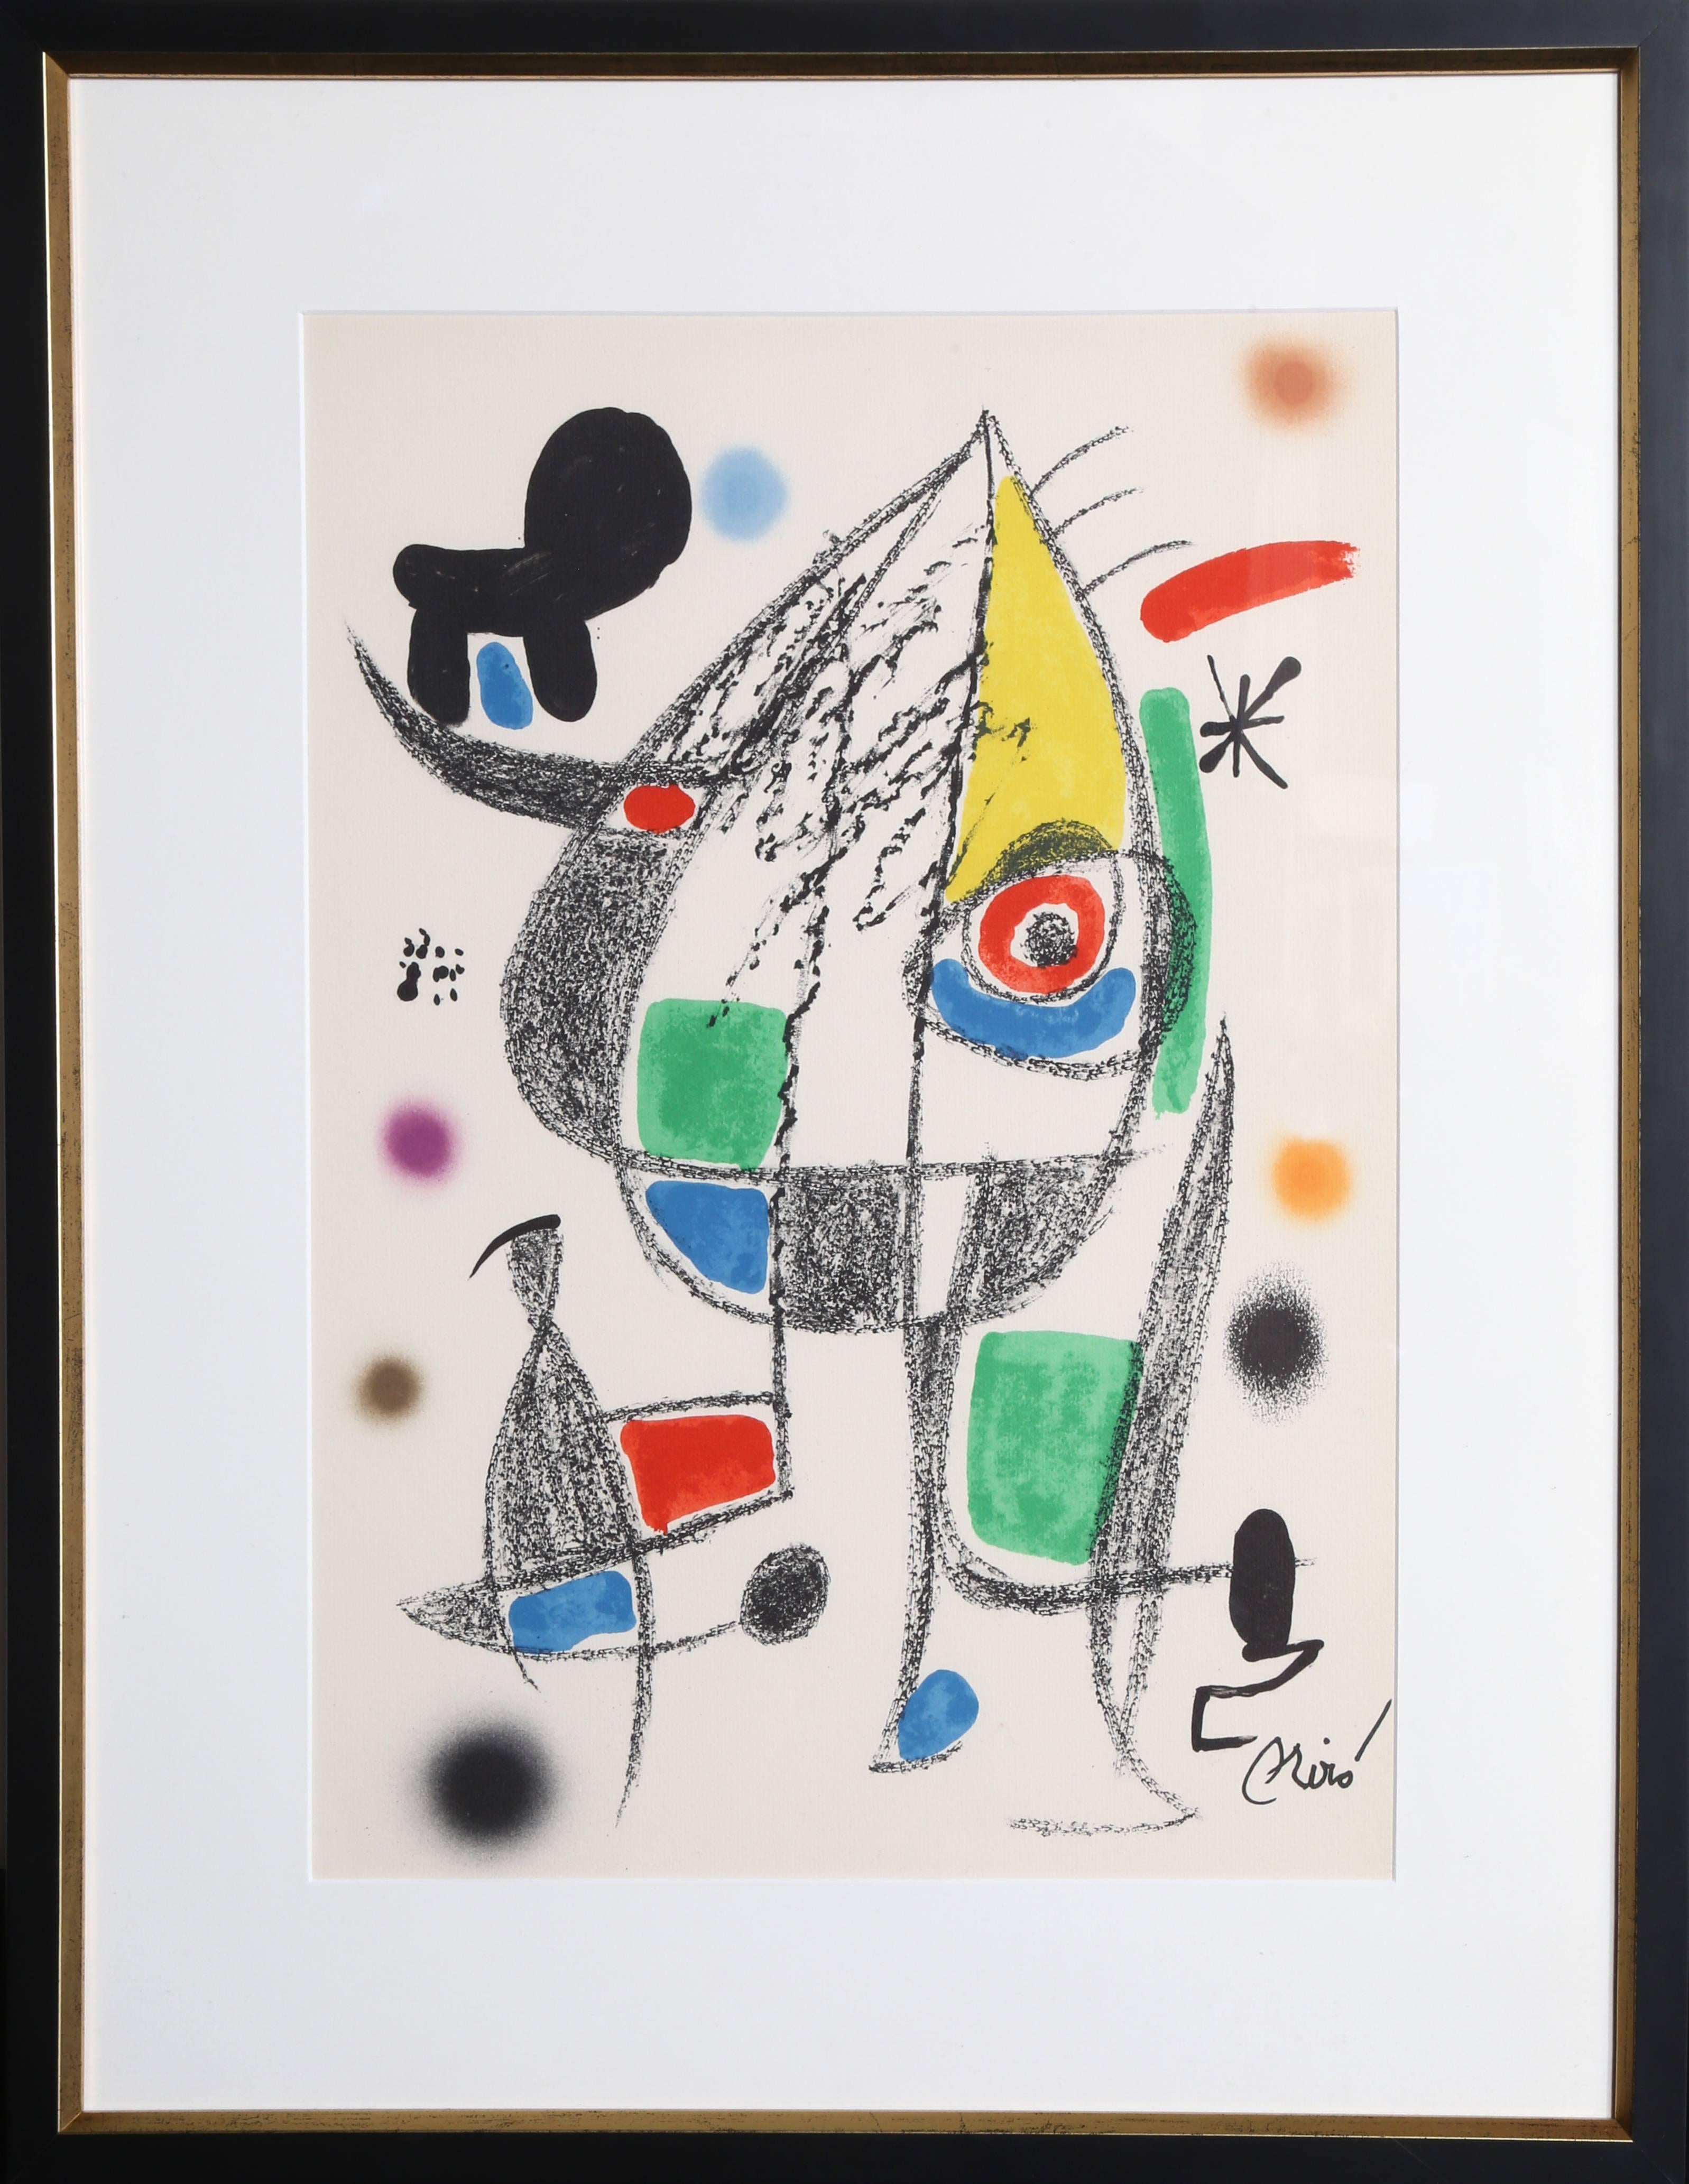 Joan Miró Abstract Print - Maravillas con Variaciones Acrosticas en el jardin de Miro (Number 22)